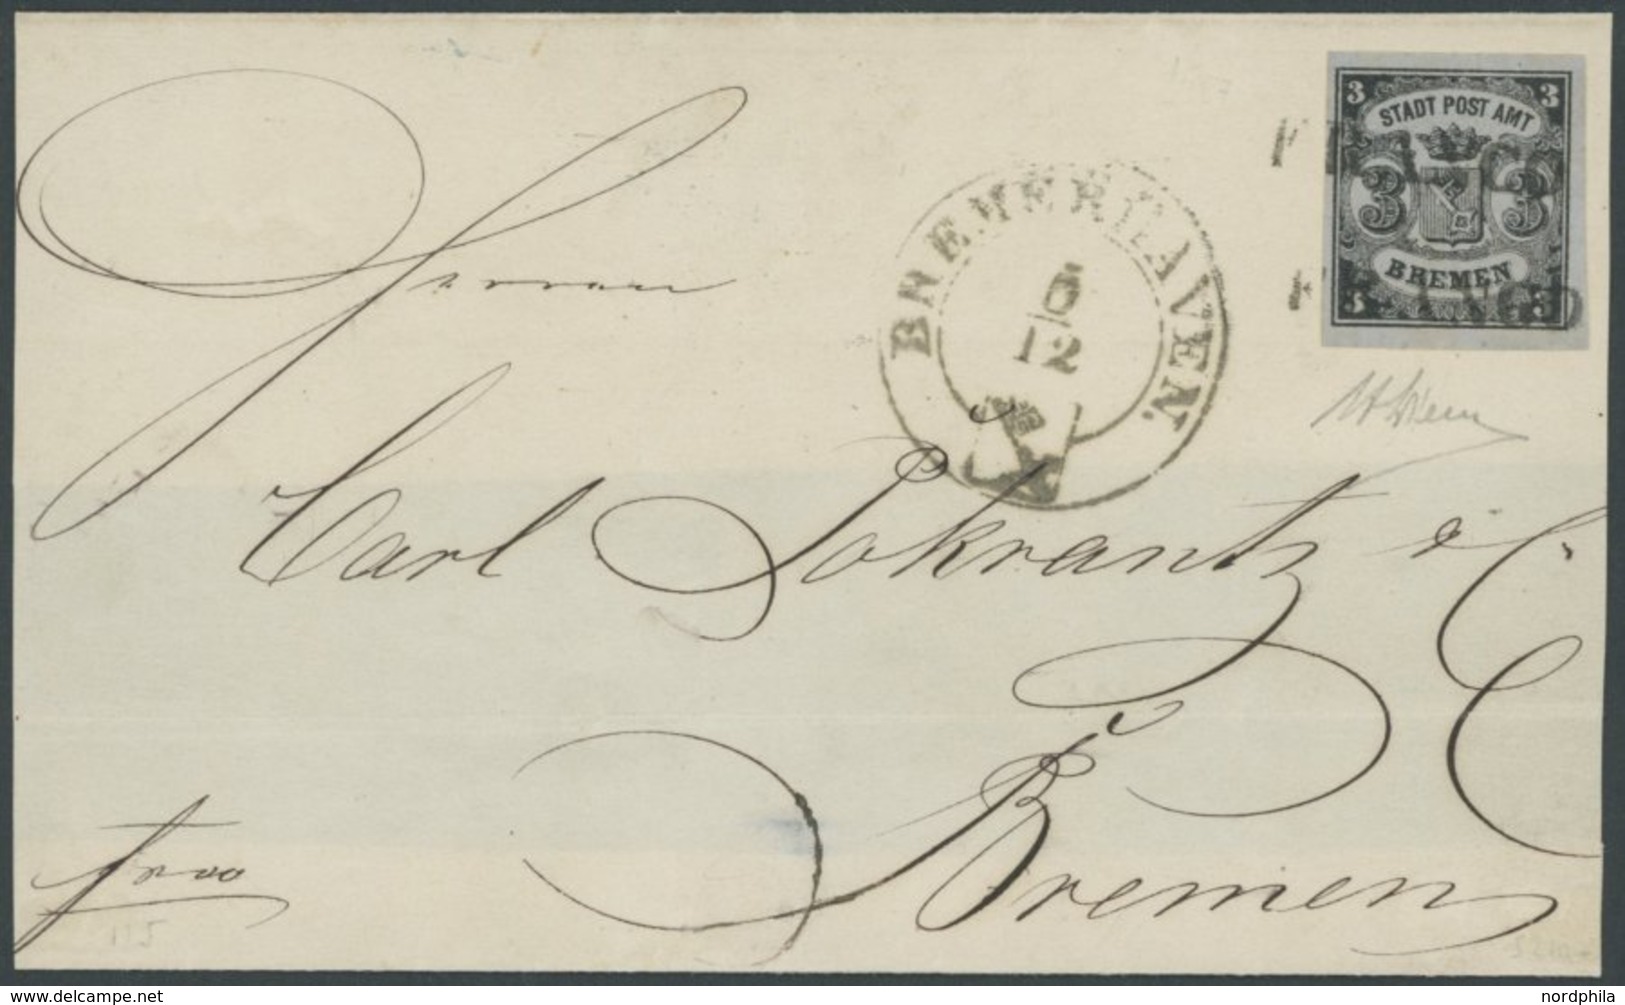 BREMEN 1x BRIEF, 1855, 3 Gr. Schwarz Auf Graublau, Senkrecht Gestreiftes Papier, Type I, Allseits Breitrandig, Kabinetts - Bremen